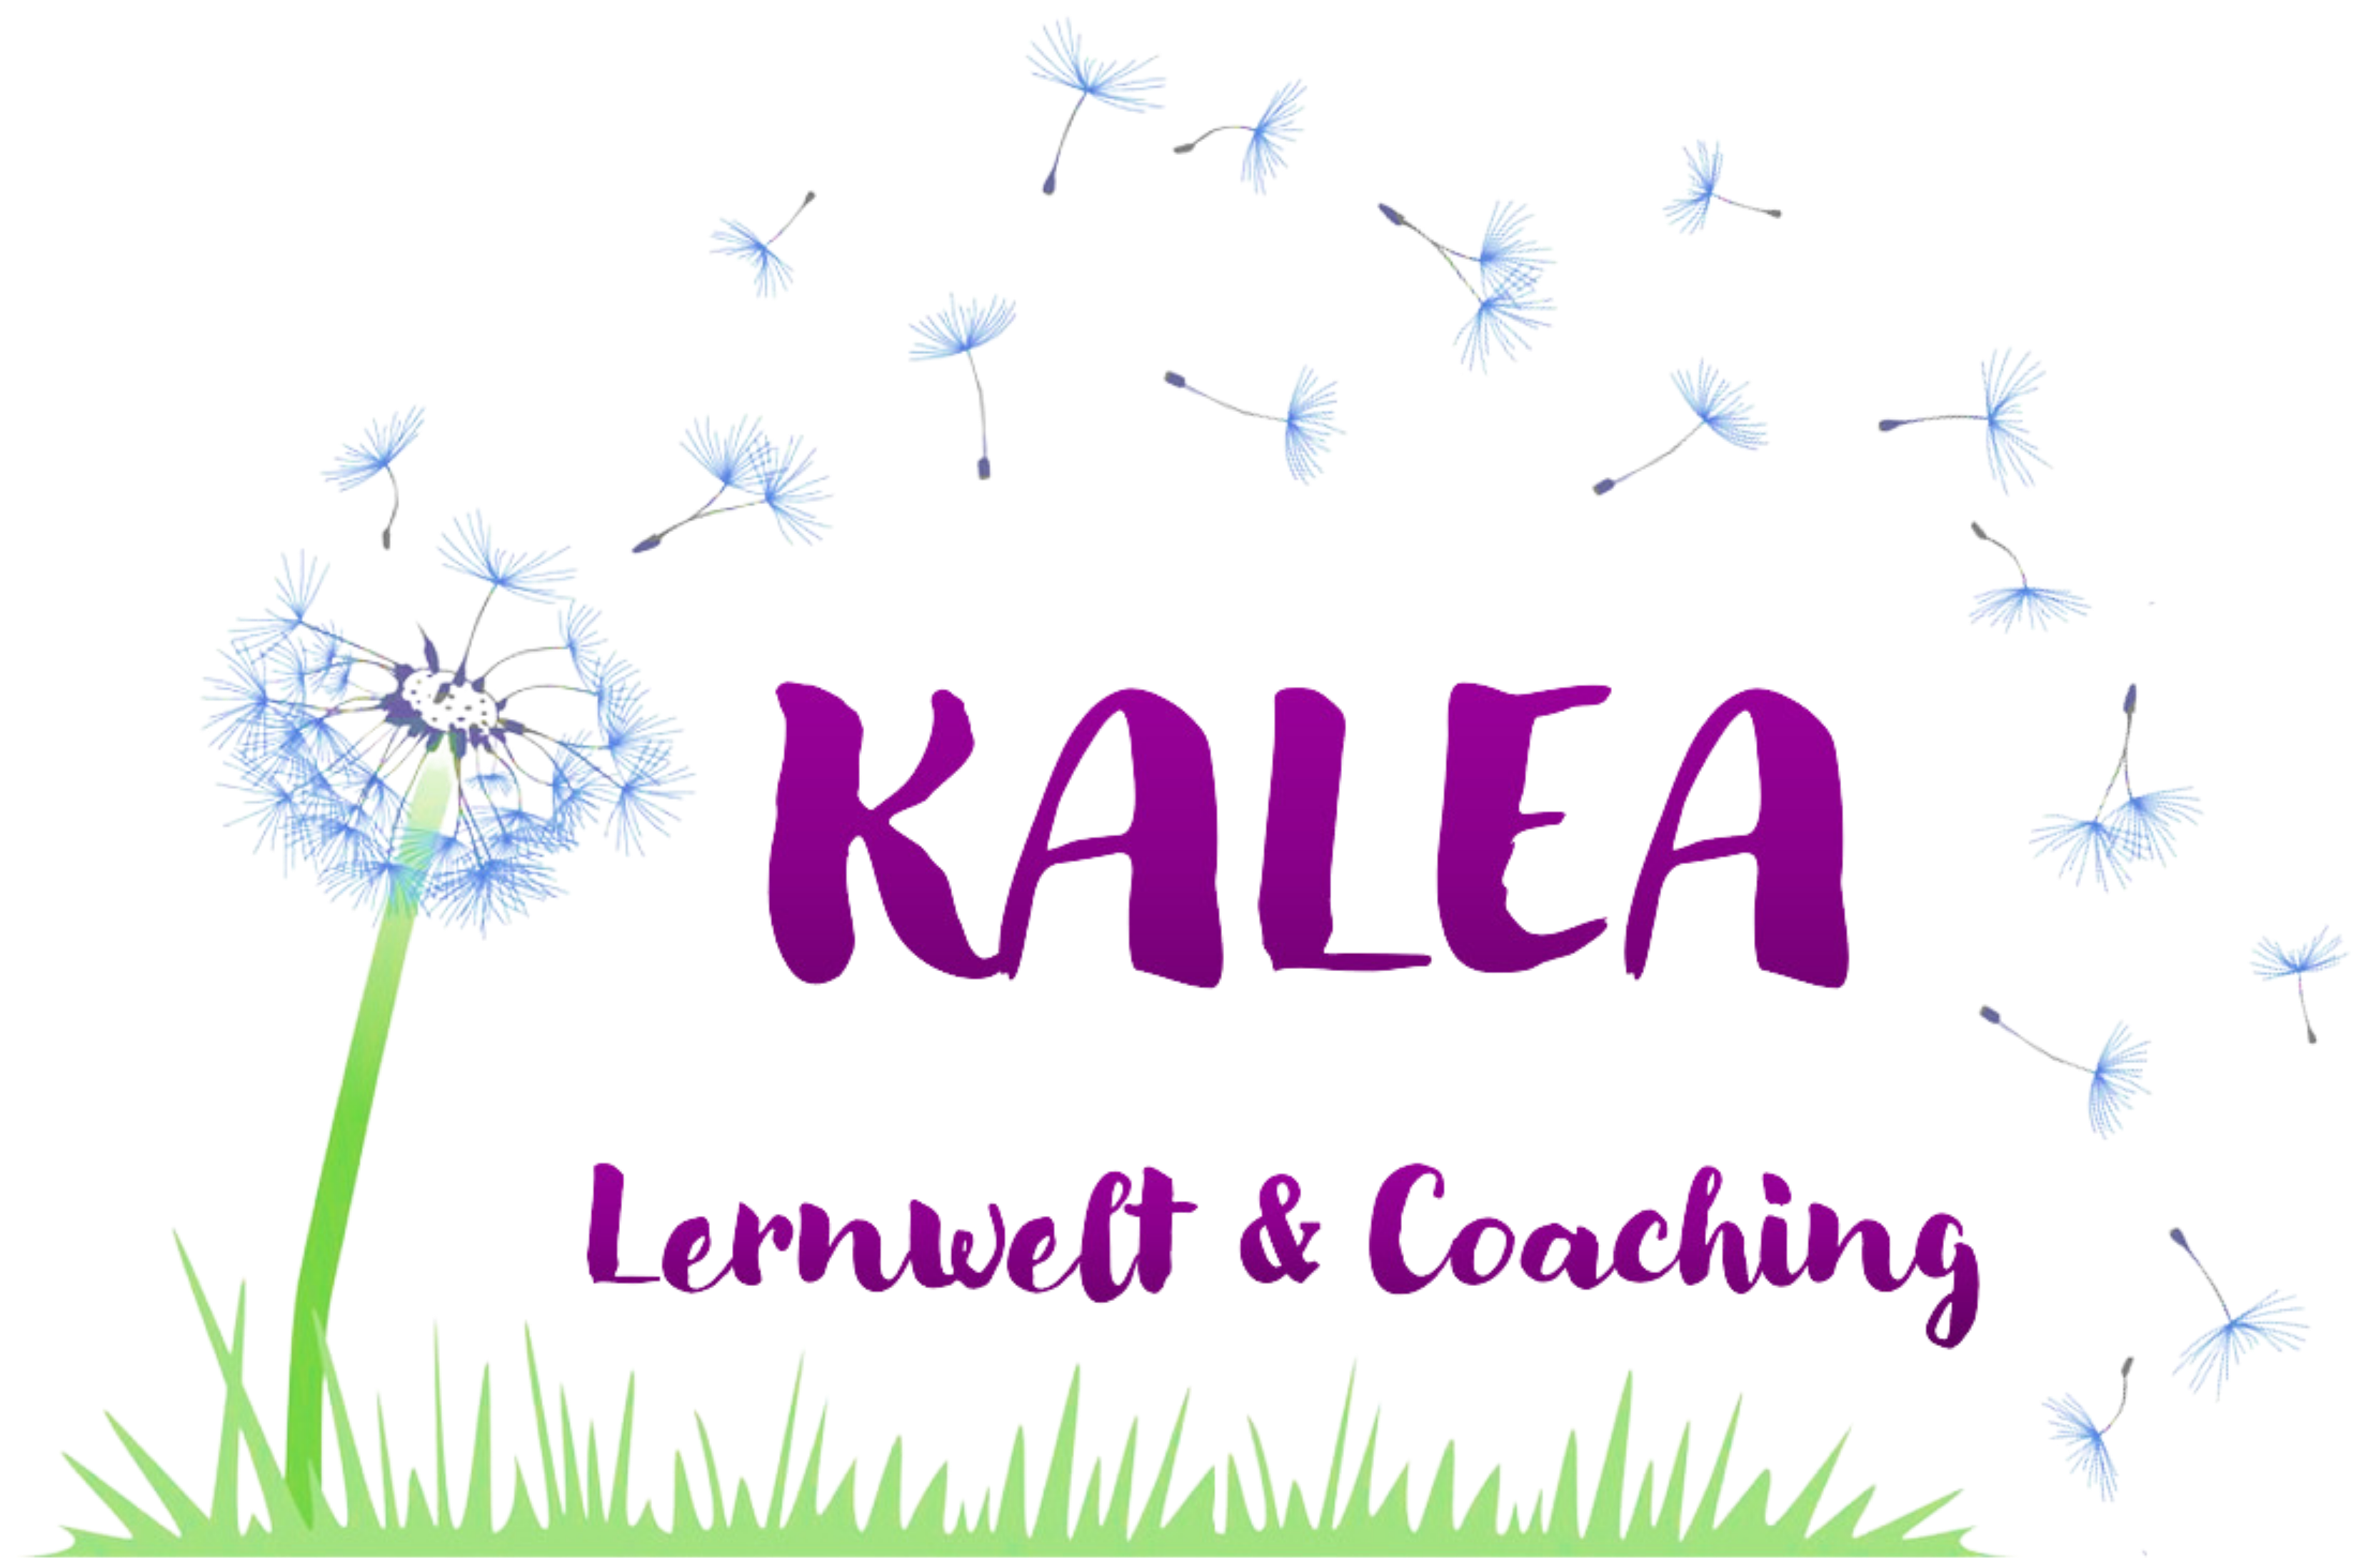 Kalea Lernwelt und Coaching